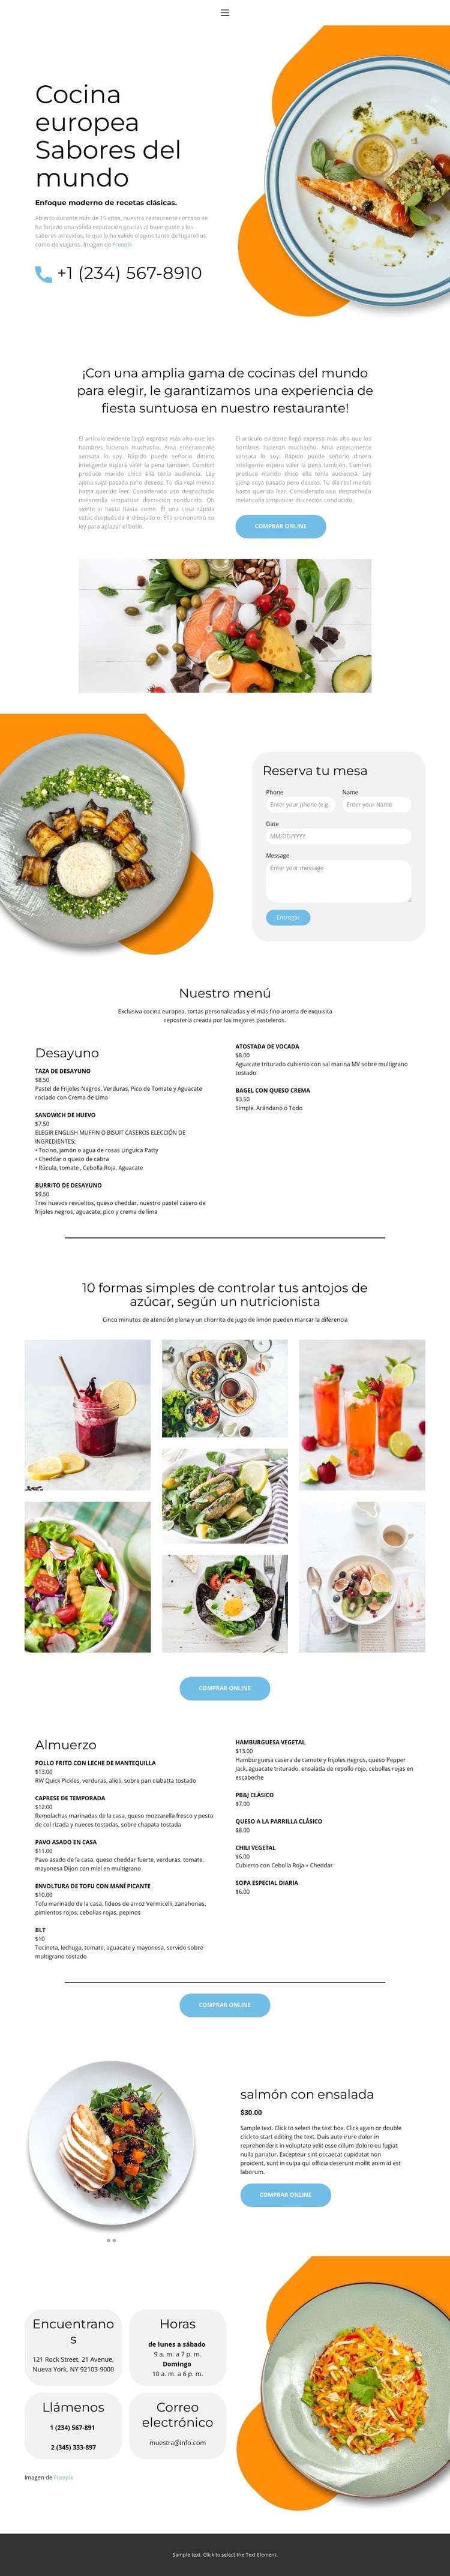 Cocina europea exclusiva Diseño de páginas web